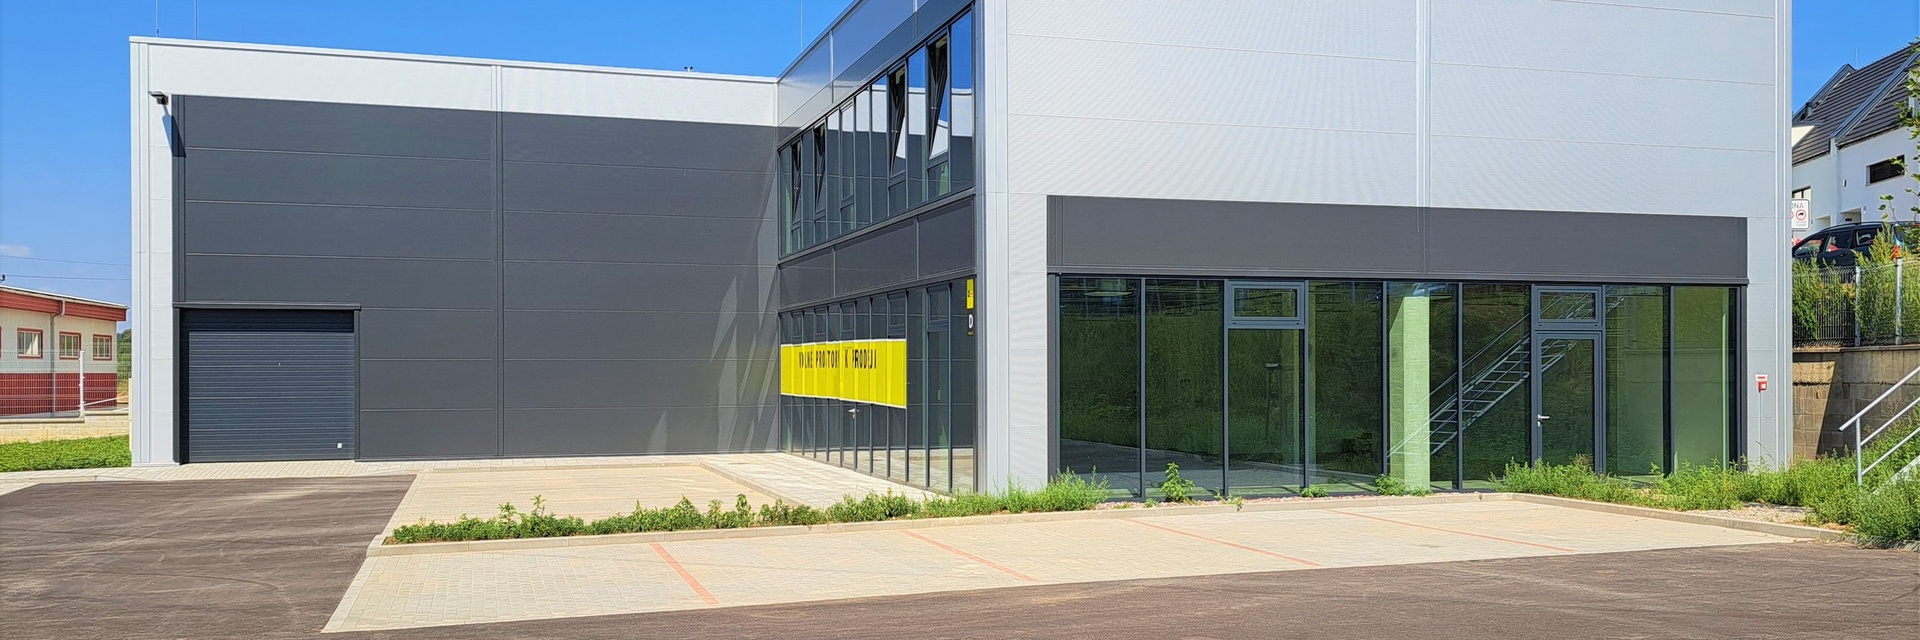 Prodej sídla společnosti - hala, kanceláře, užitná plocha 651 m² na severu Brna, dostatečná manipulační a parkovací plocha